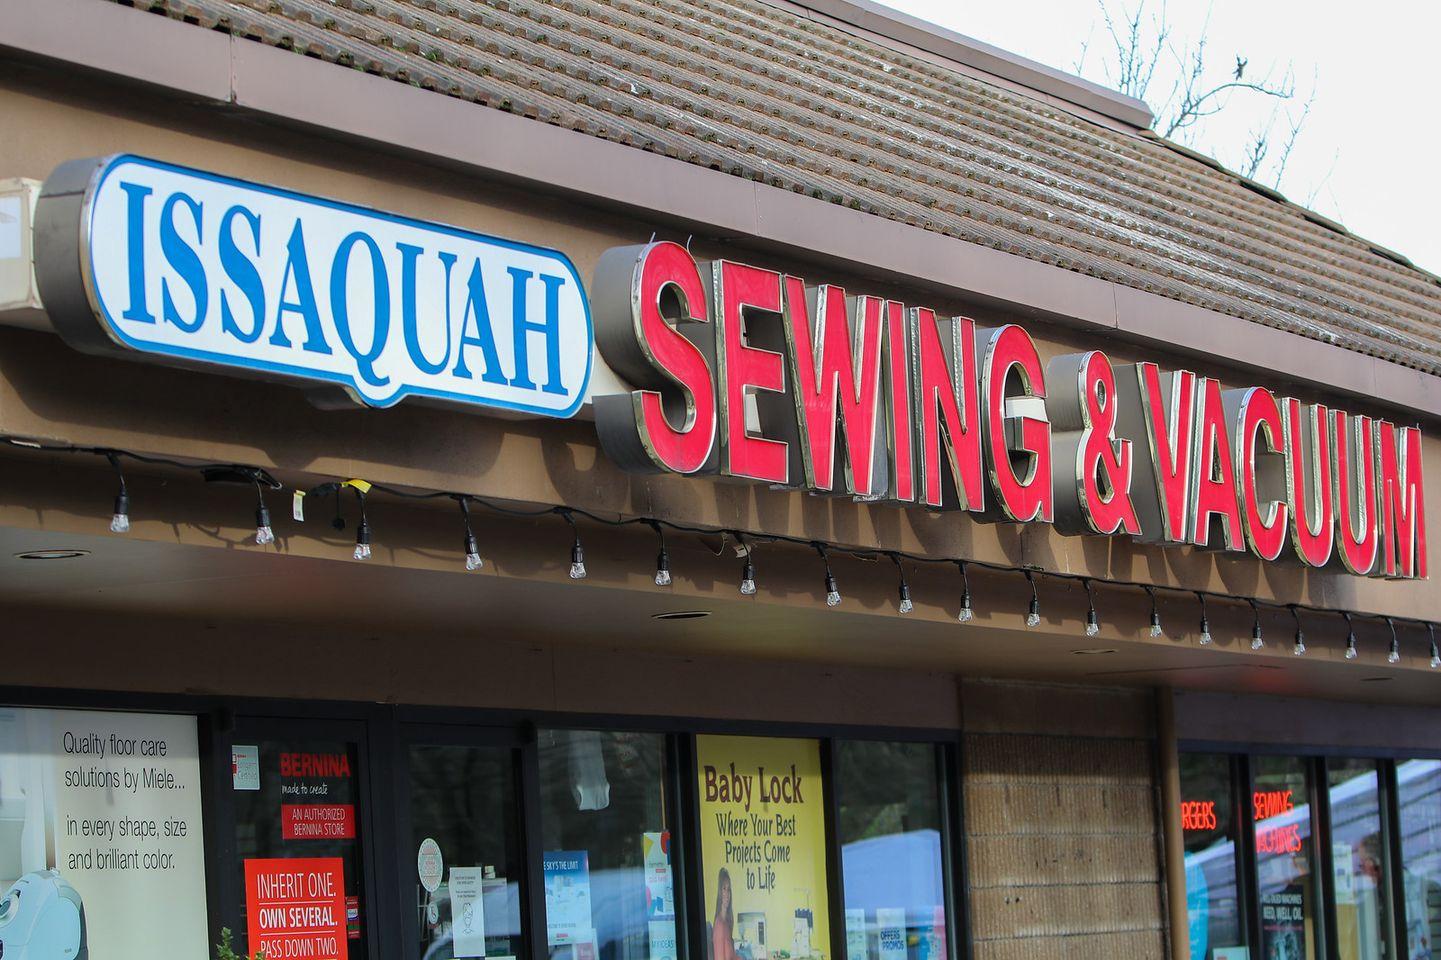 Issaquah Sewing & Vacuum